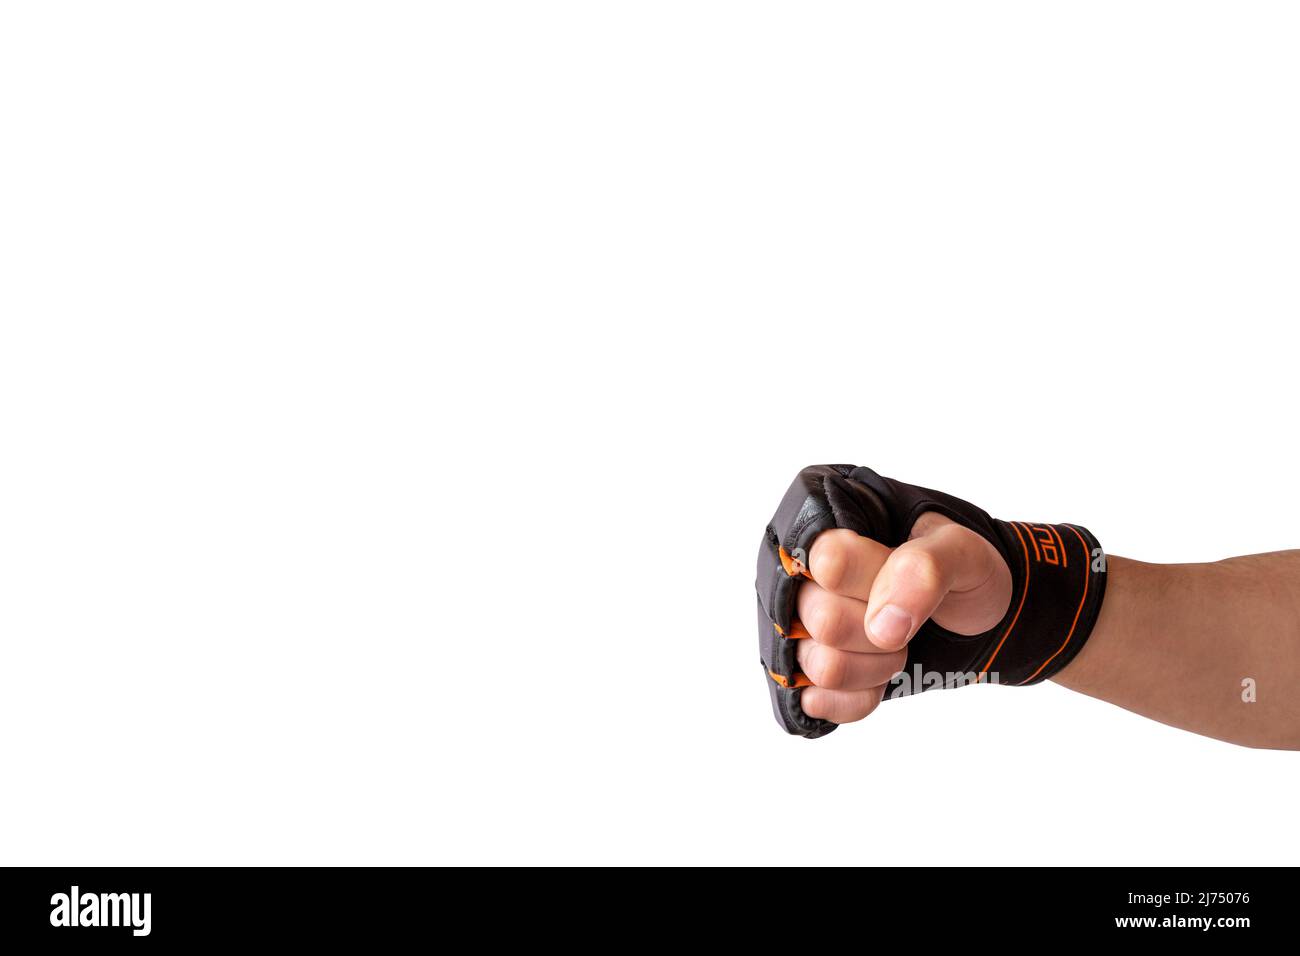 Guanti da kickboxing con braccio isolato su sfondo bianco, copy space punzoning con guanti da boxing, vista frontale, kickboxing pugno spazio vuoto idea Foto Stock